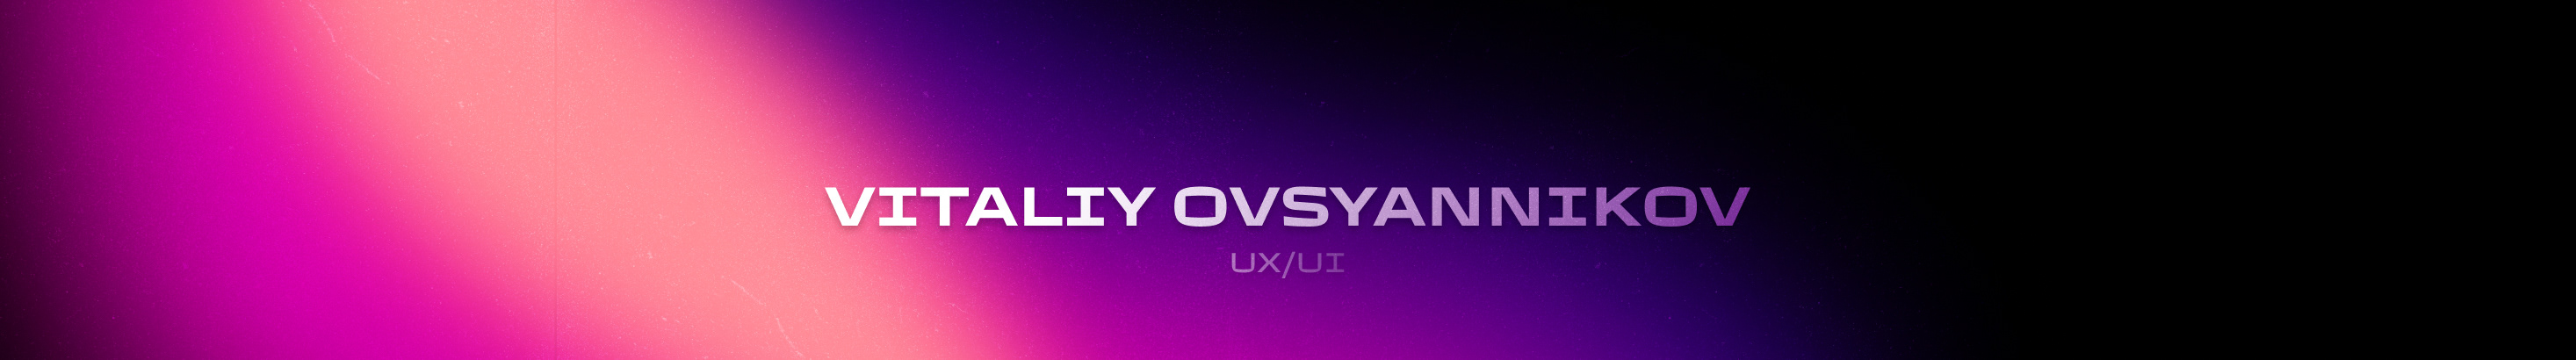 VITALIY OVSYANNIKOV's profile banner